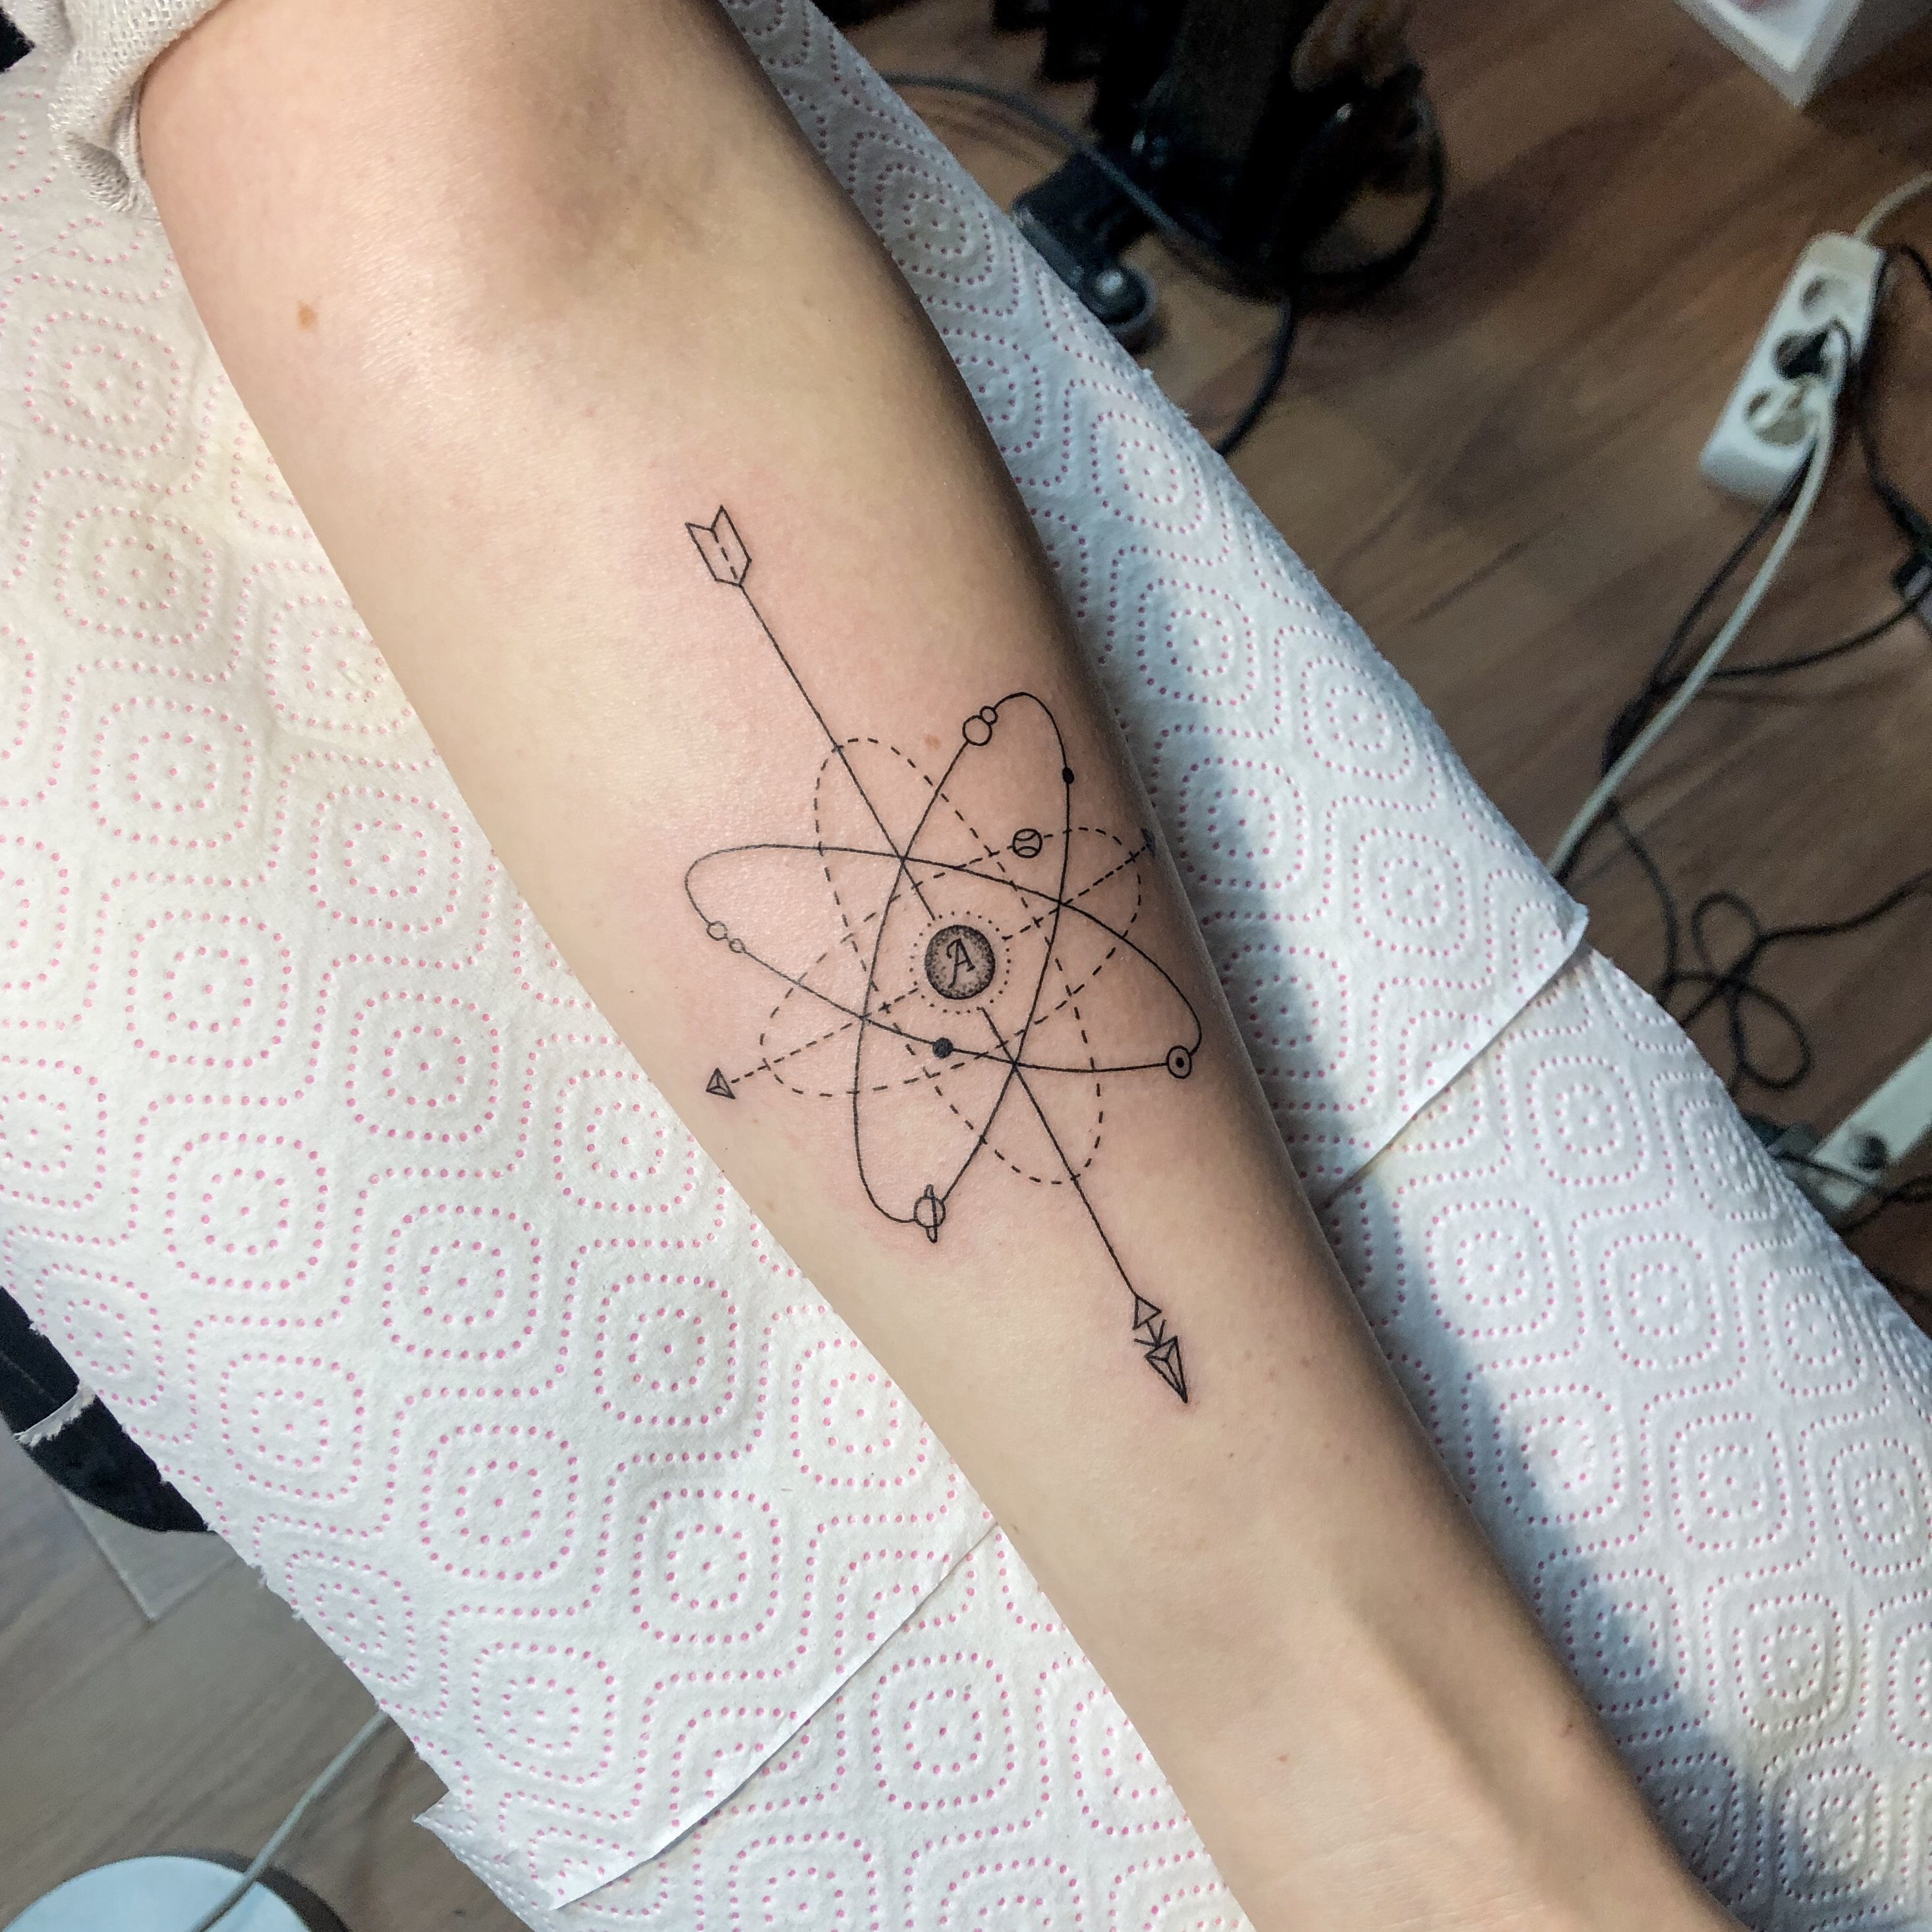 Update 152+ carbon molecule tattoo super hot